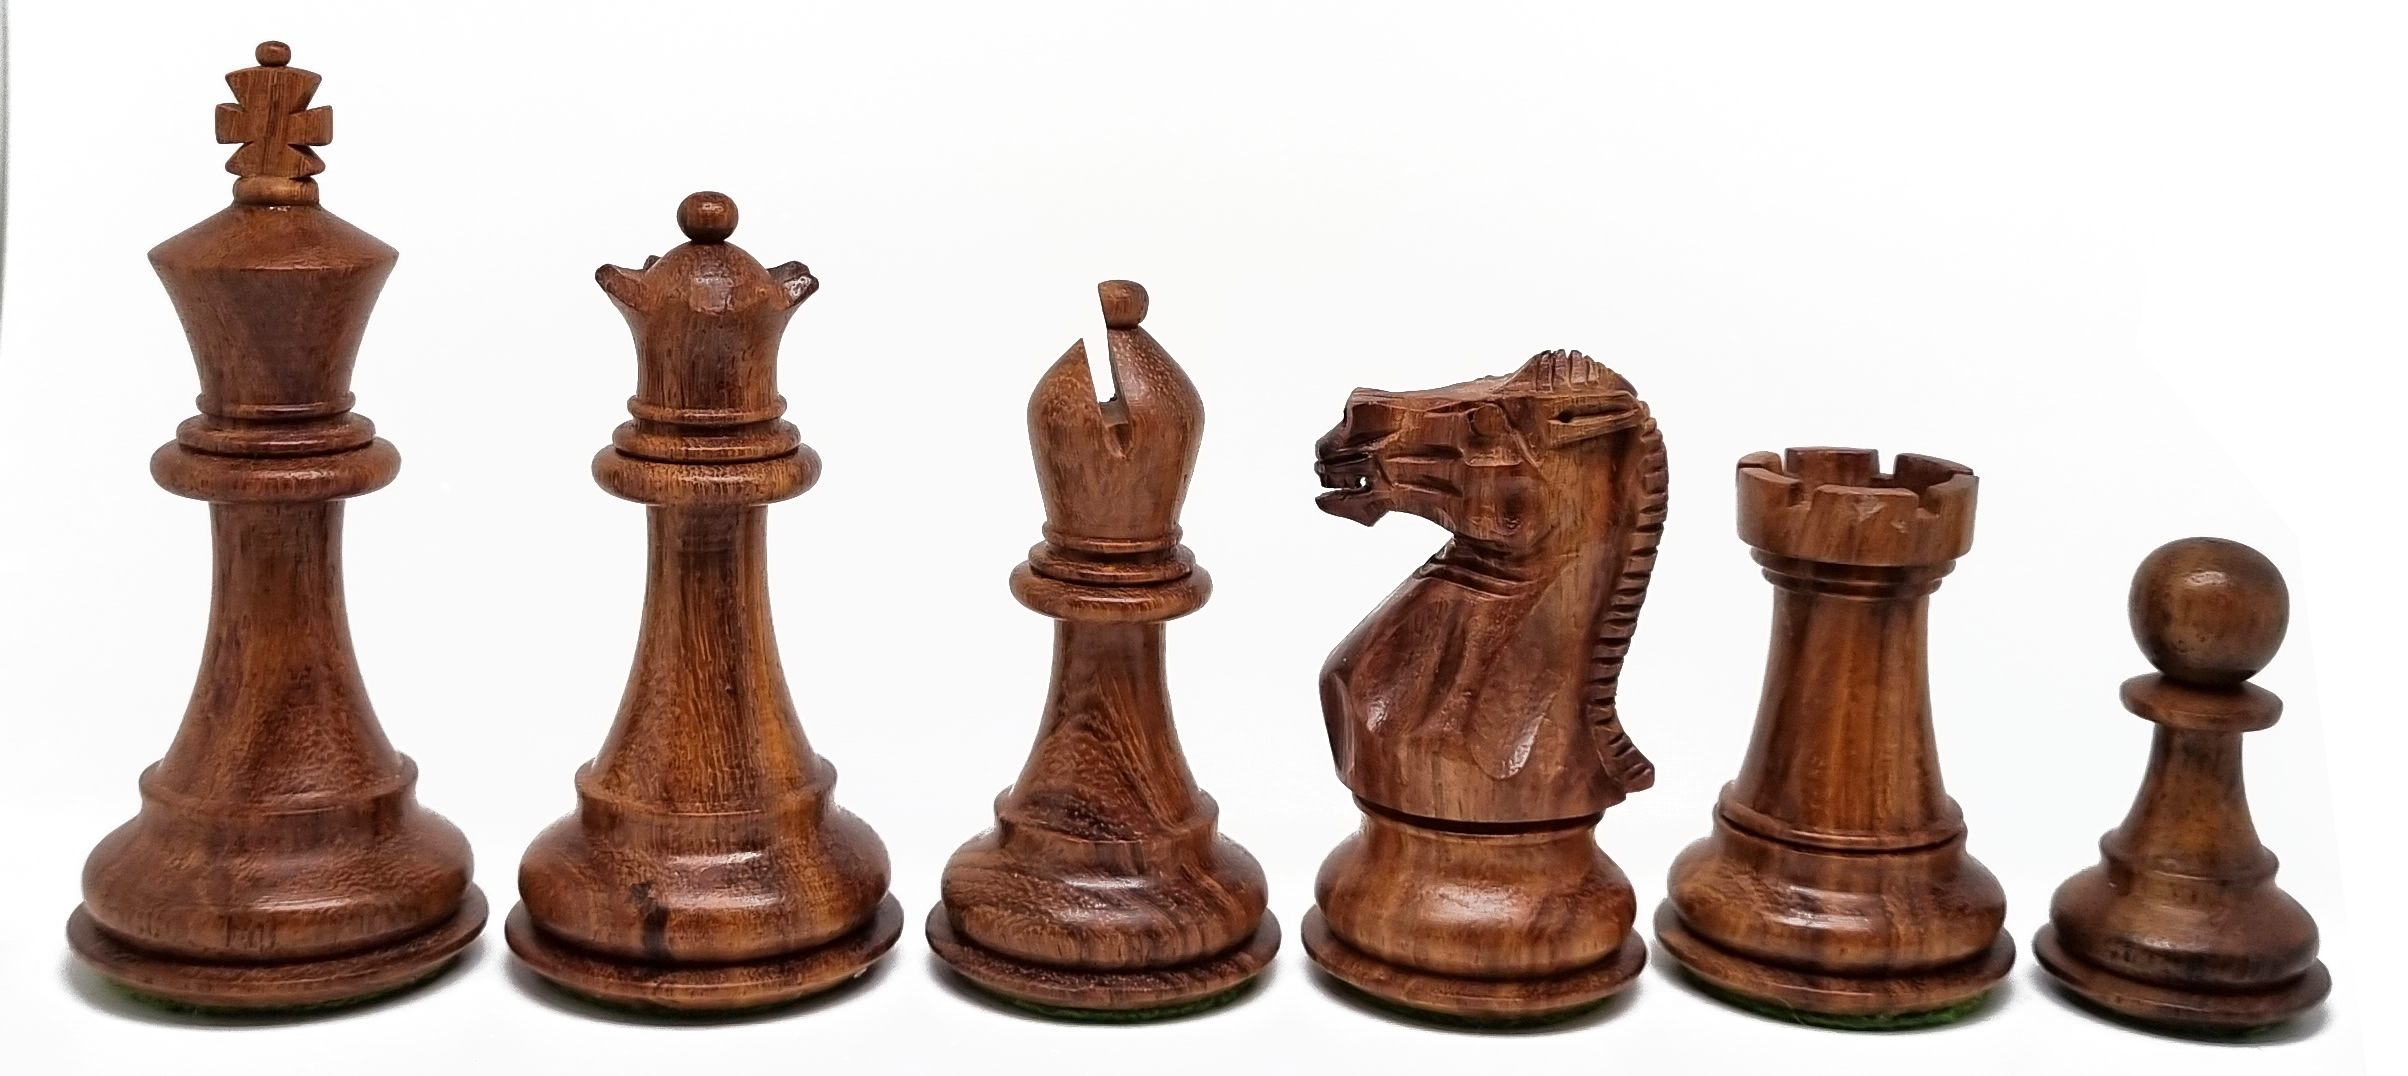 VI/ Piezas de ajedrez modelo Elegant "3,75" Shisham.